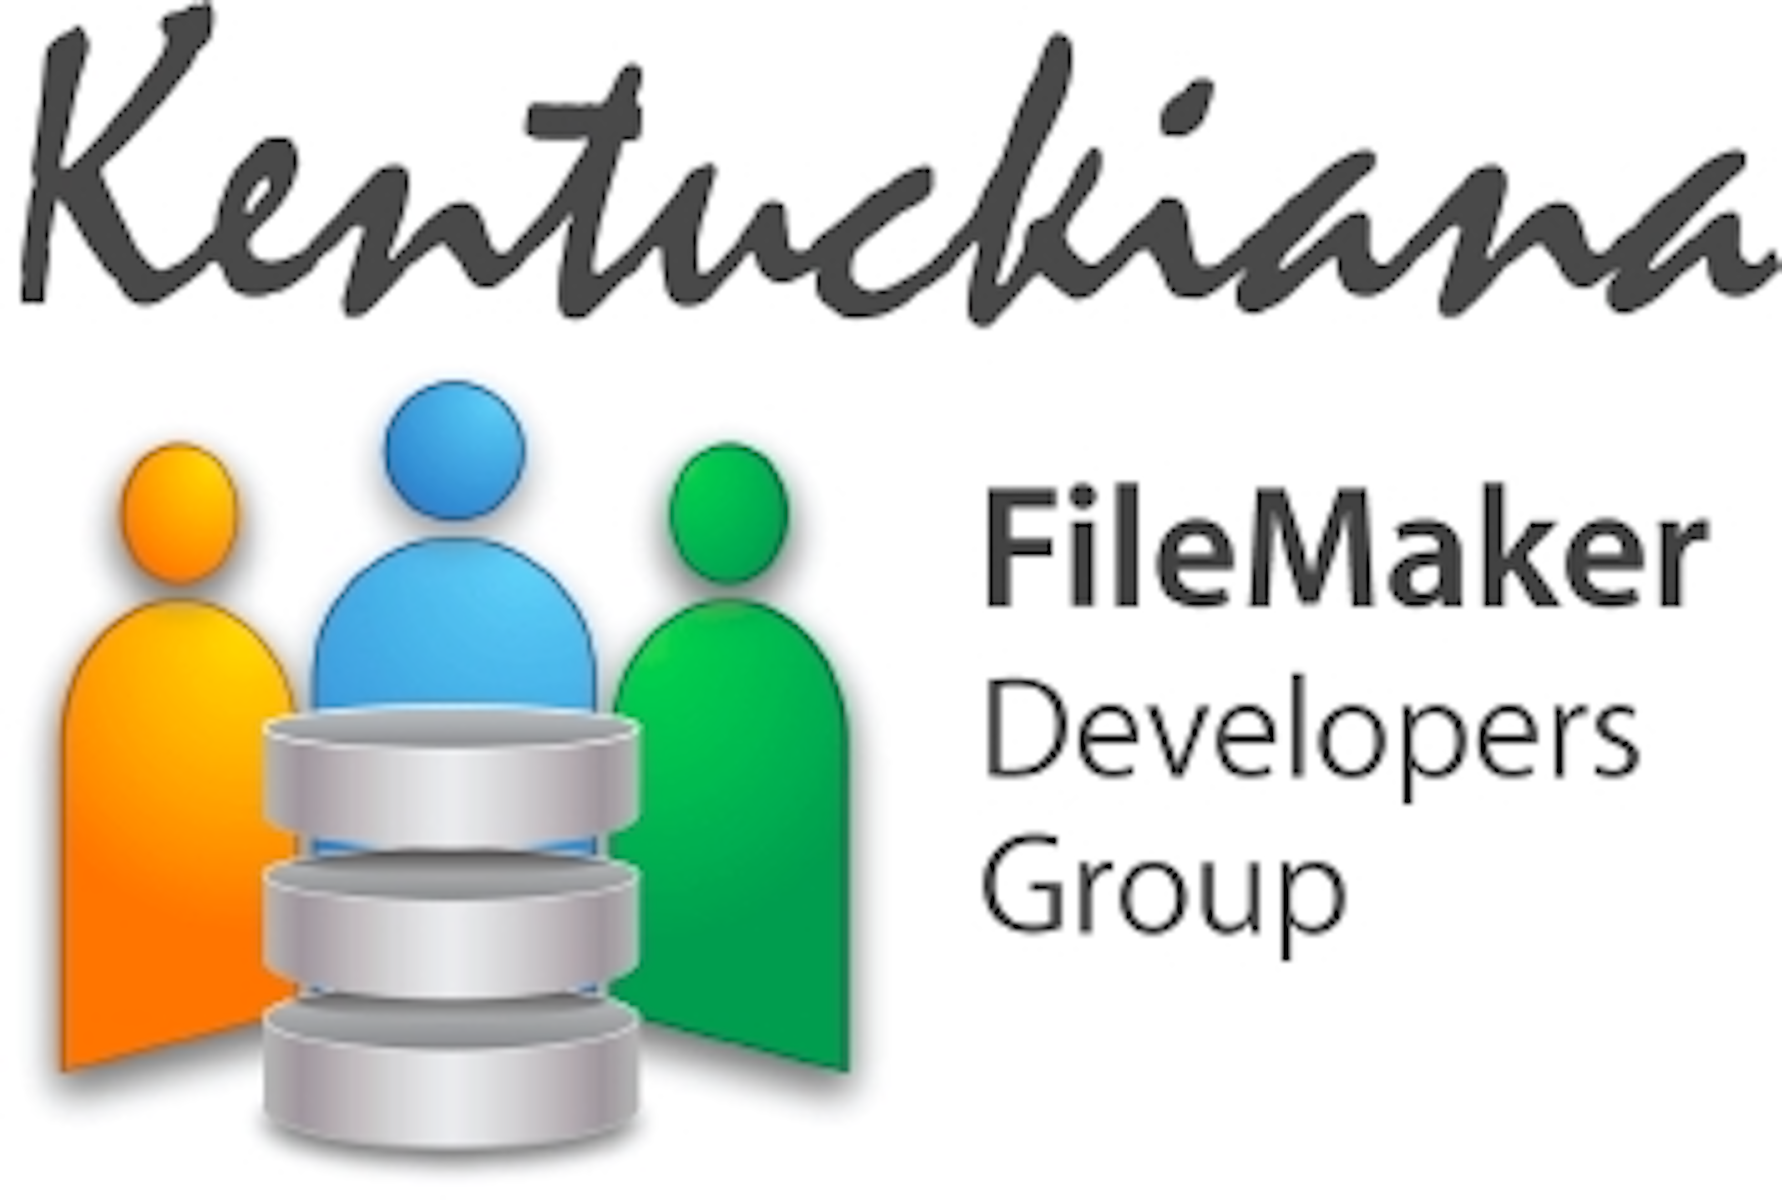 Kentuckiana FileMaker Developers Group